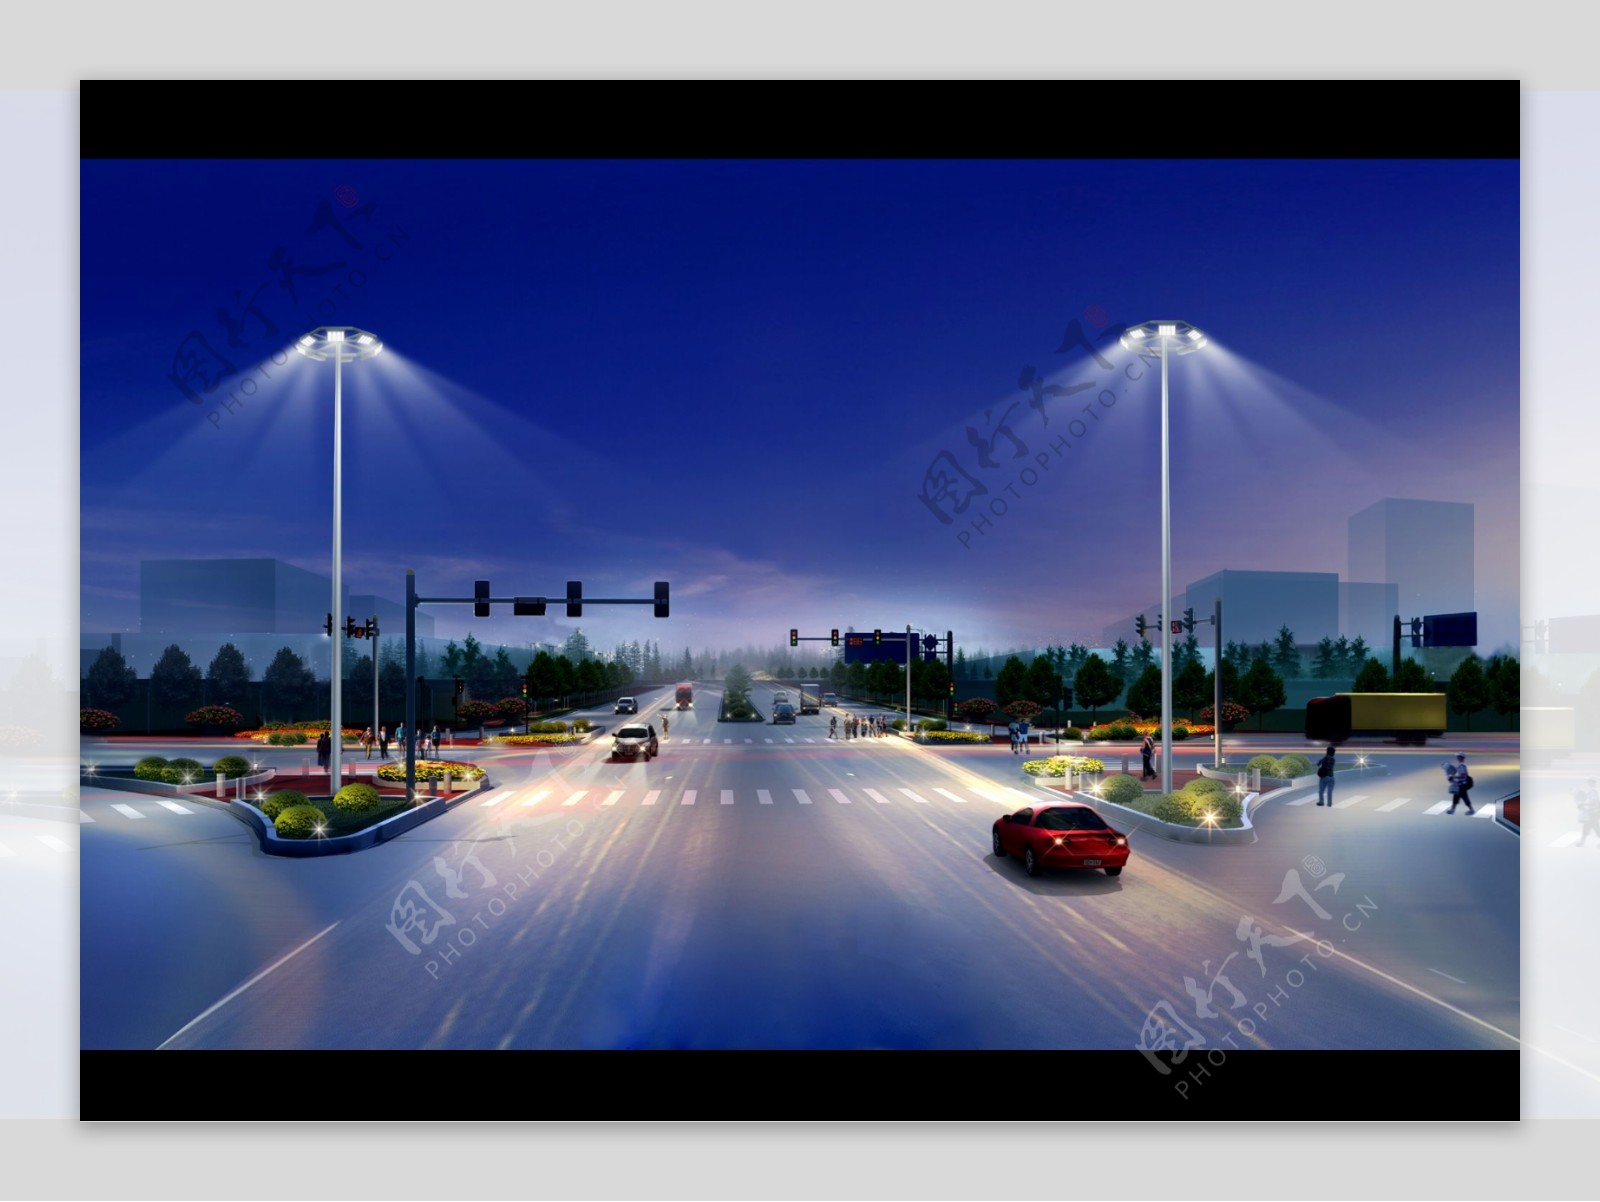 十字路口LED路灯照明效果图原图